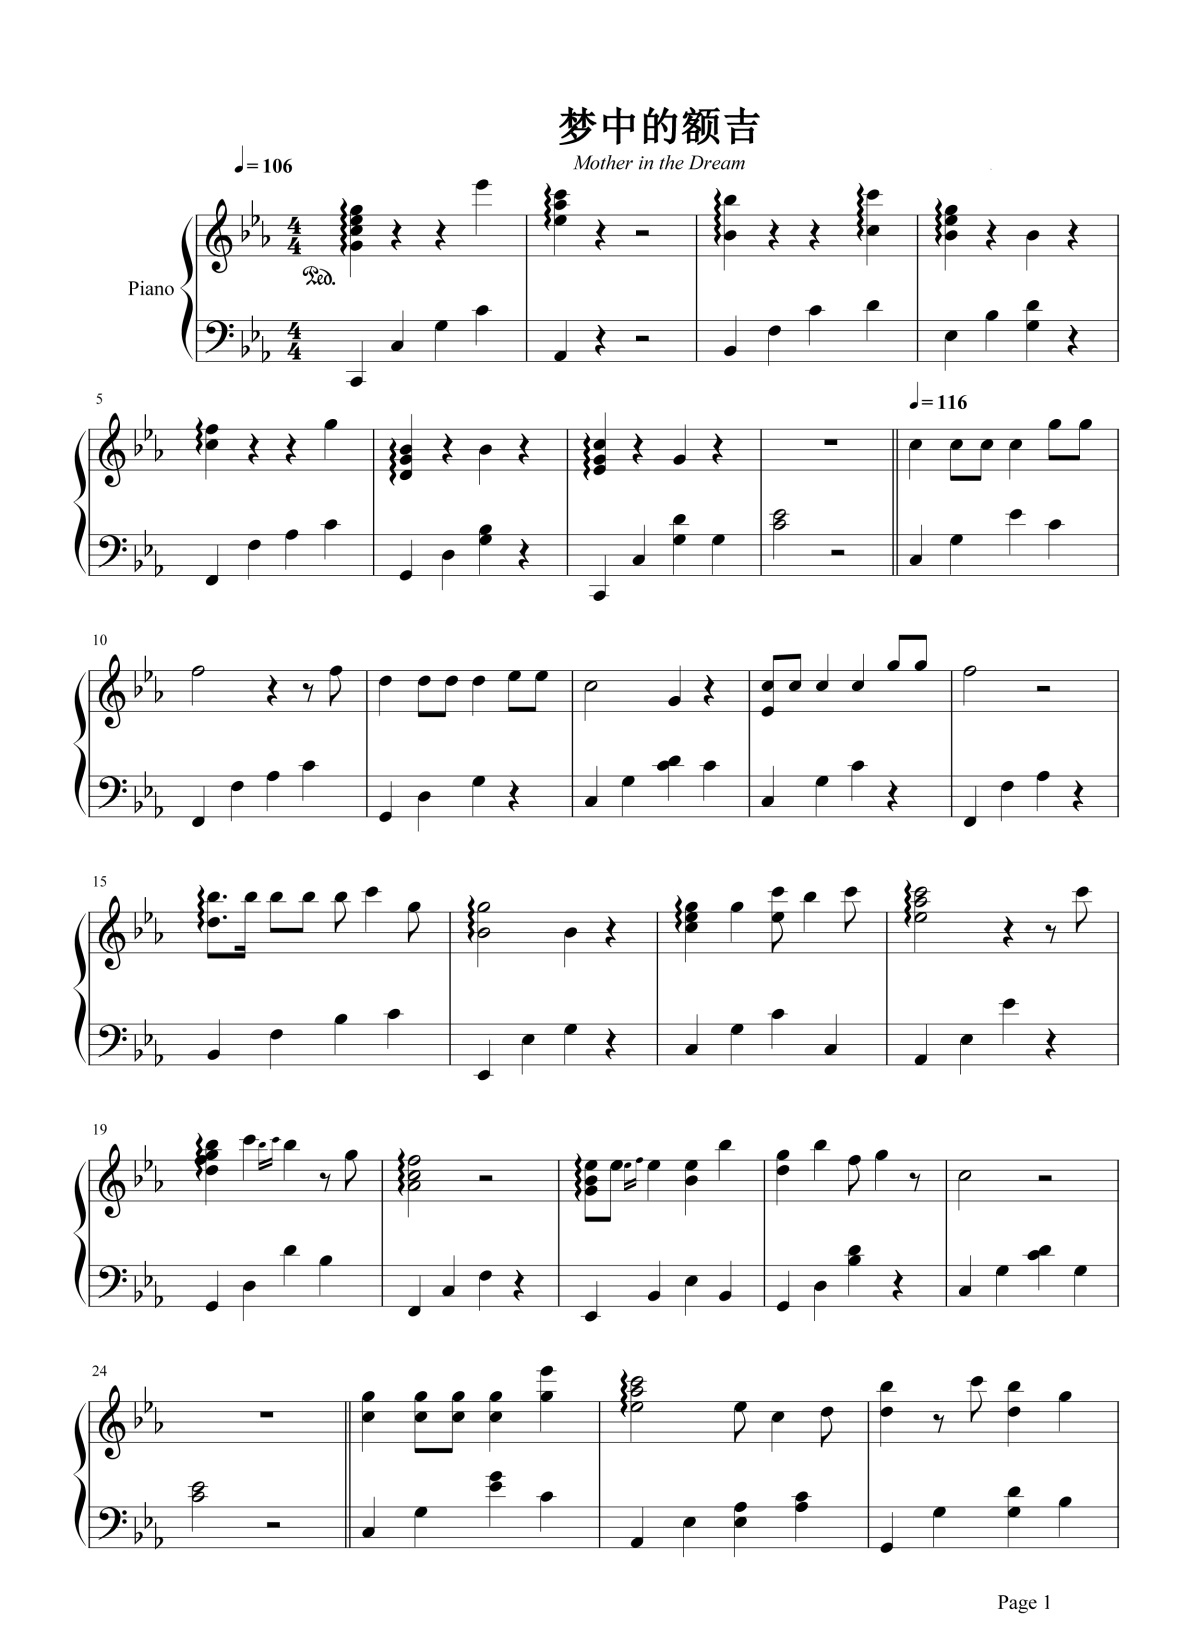 《梦中的额吉》的钢琴谱钢琴曲谱 - 乌达木